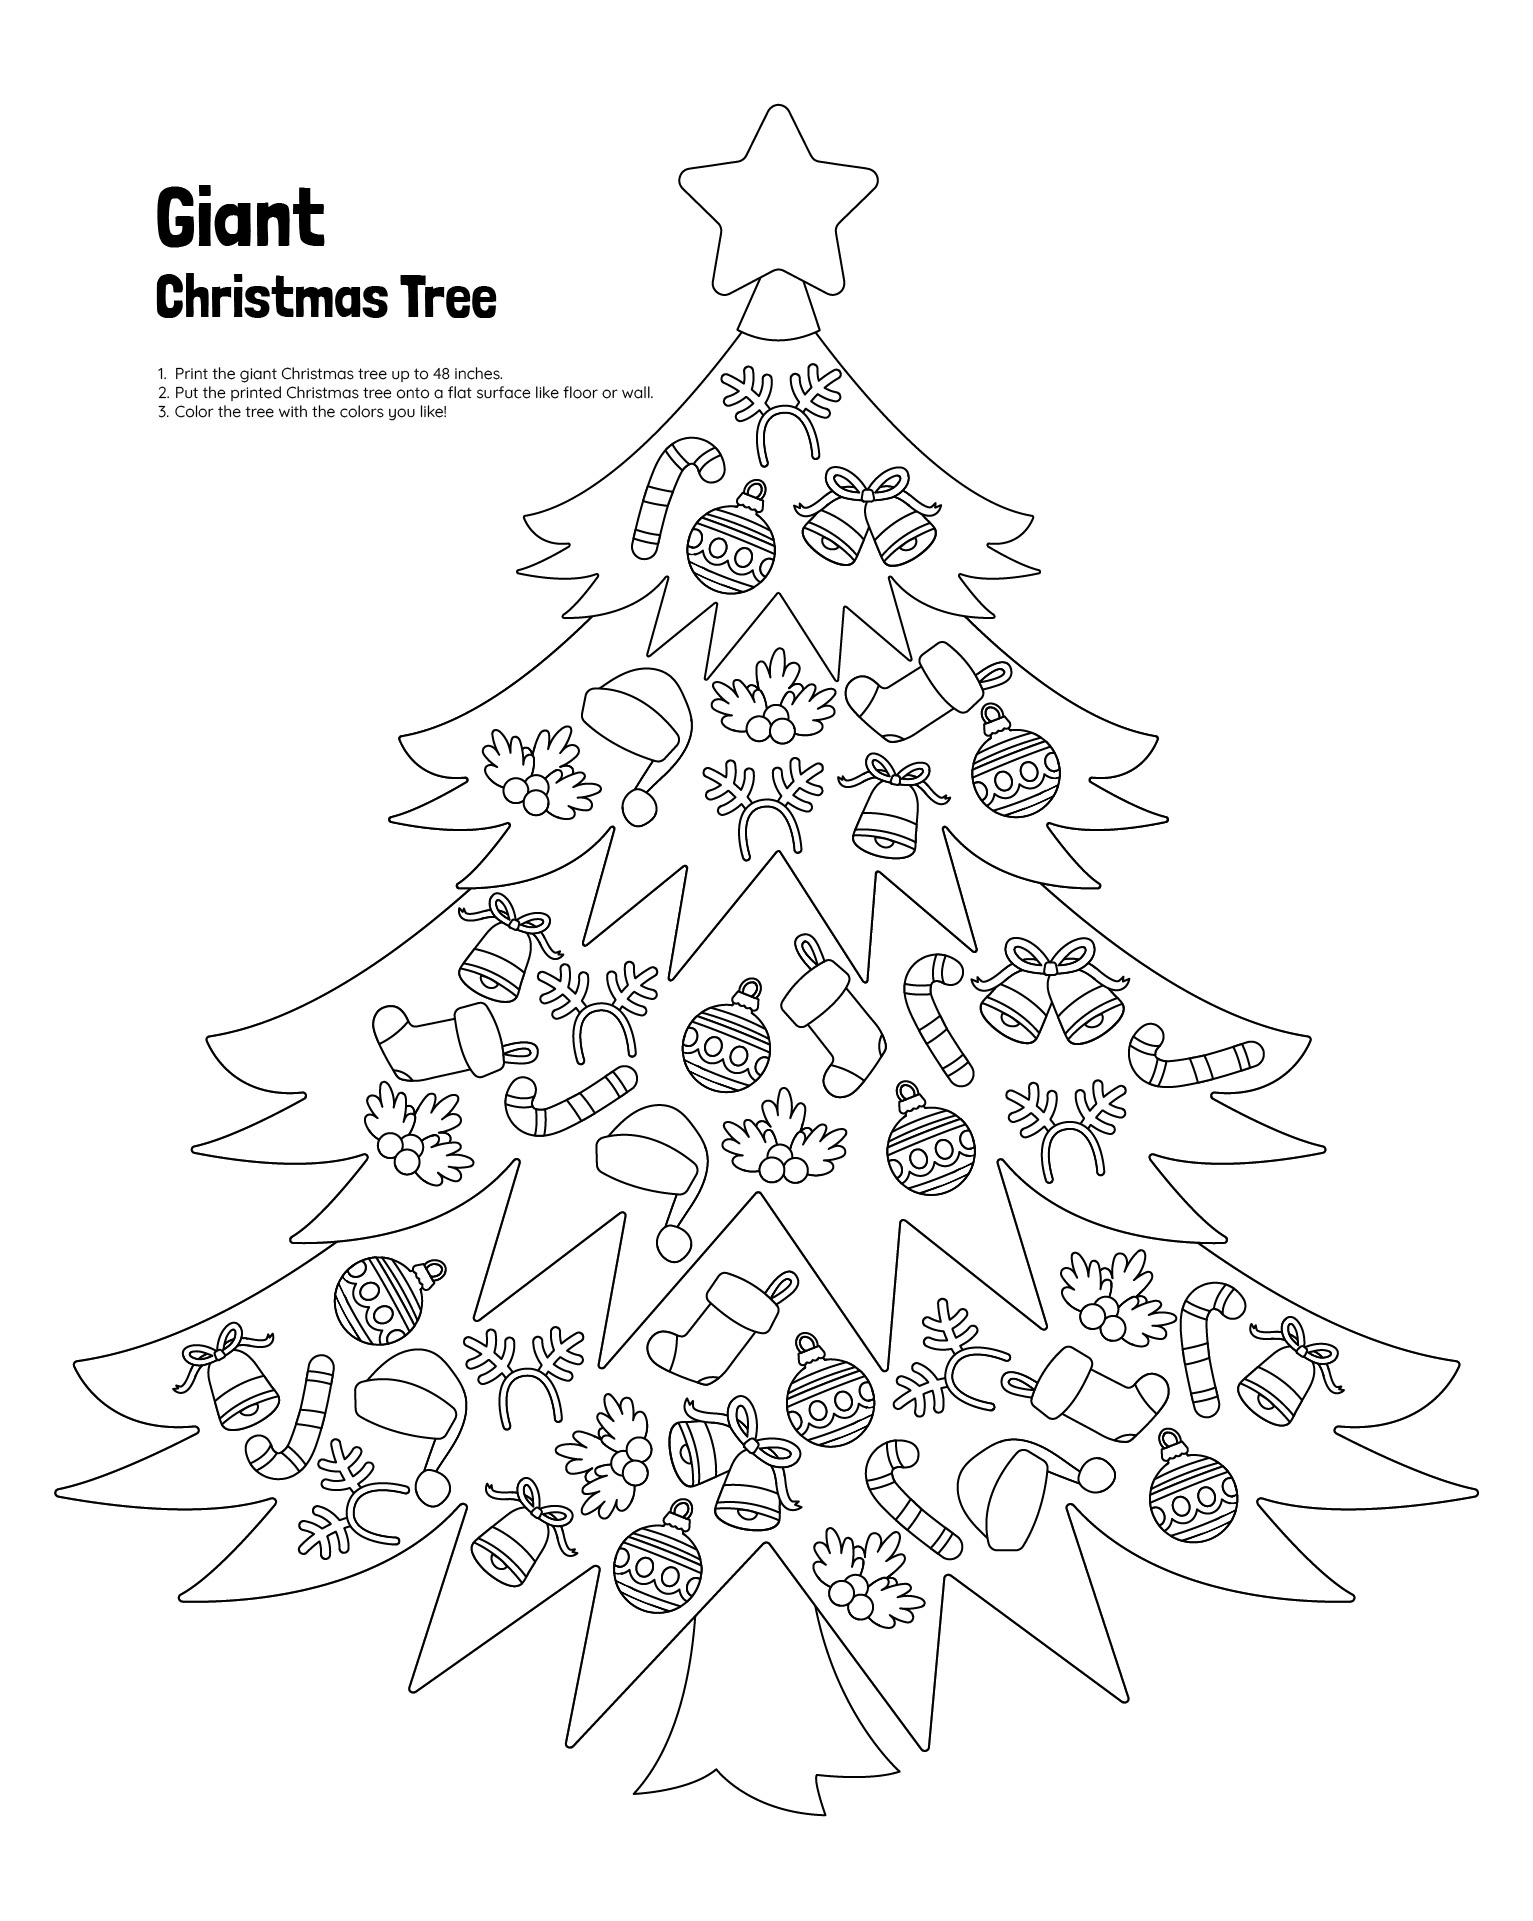 Giant Christmas Tree Printable Activity